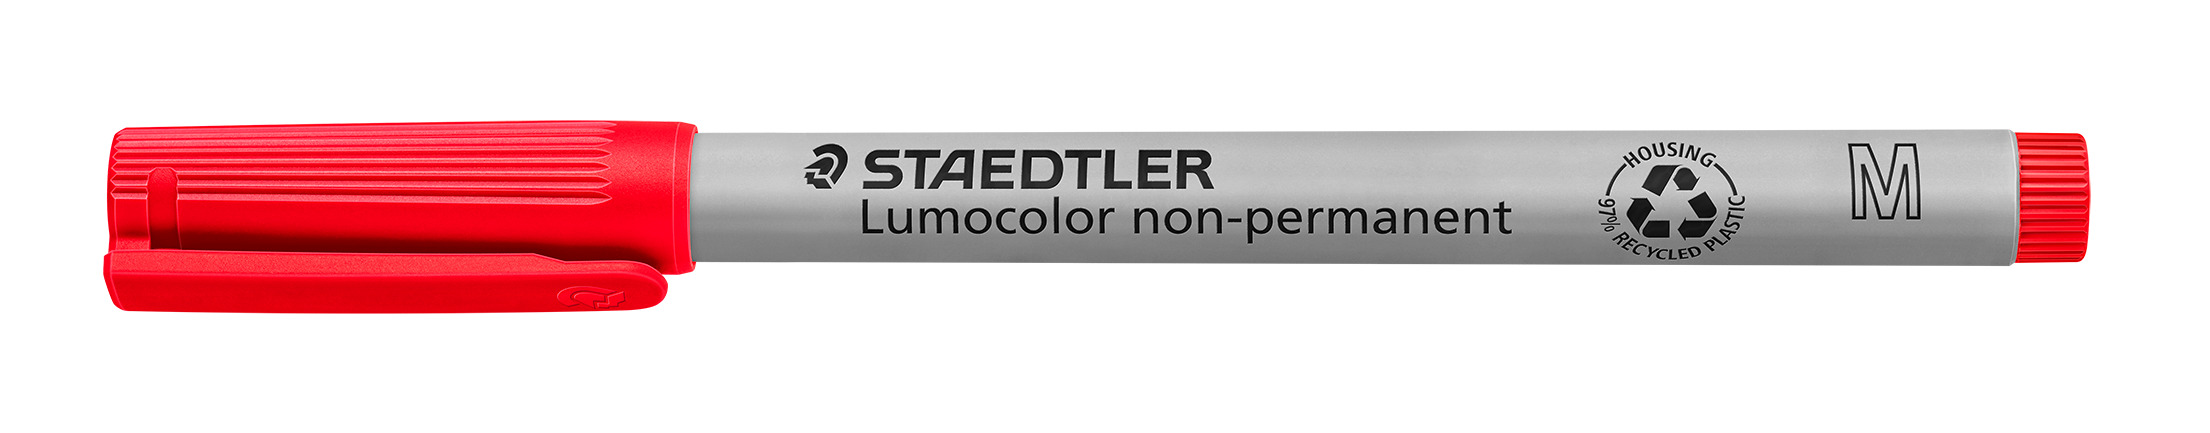 STAEDTLER® OH-Stift, Lumocolor® 315, M, nachfüllbar, non-permanent, Rundspitze, 1 mm, Schaftfarbe: grau, Schreibfarbe: rot